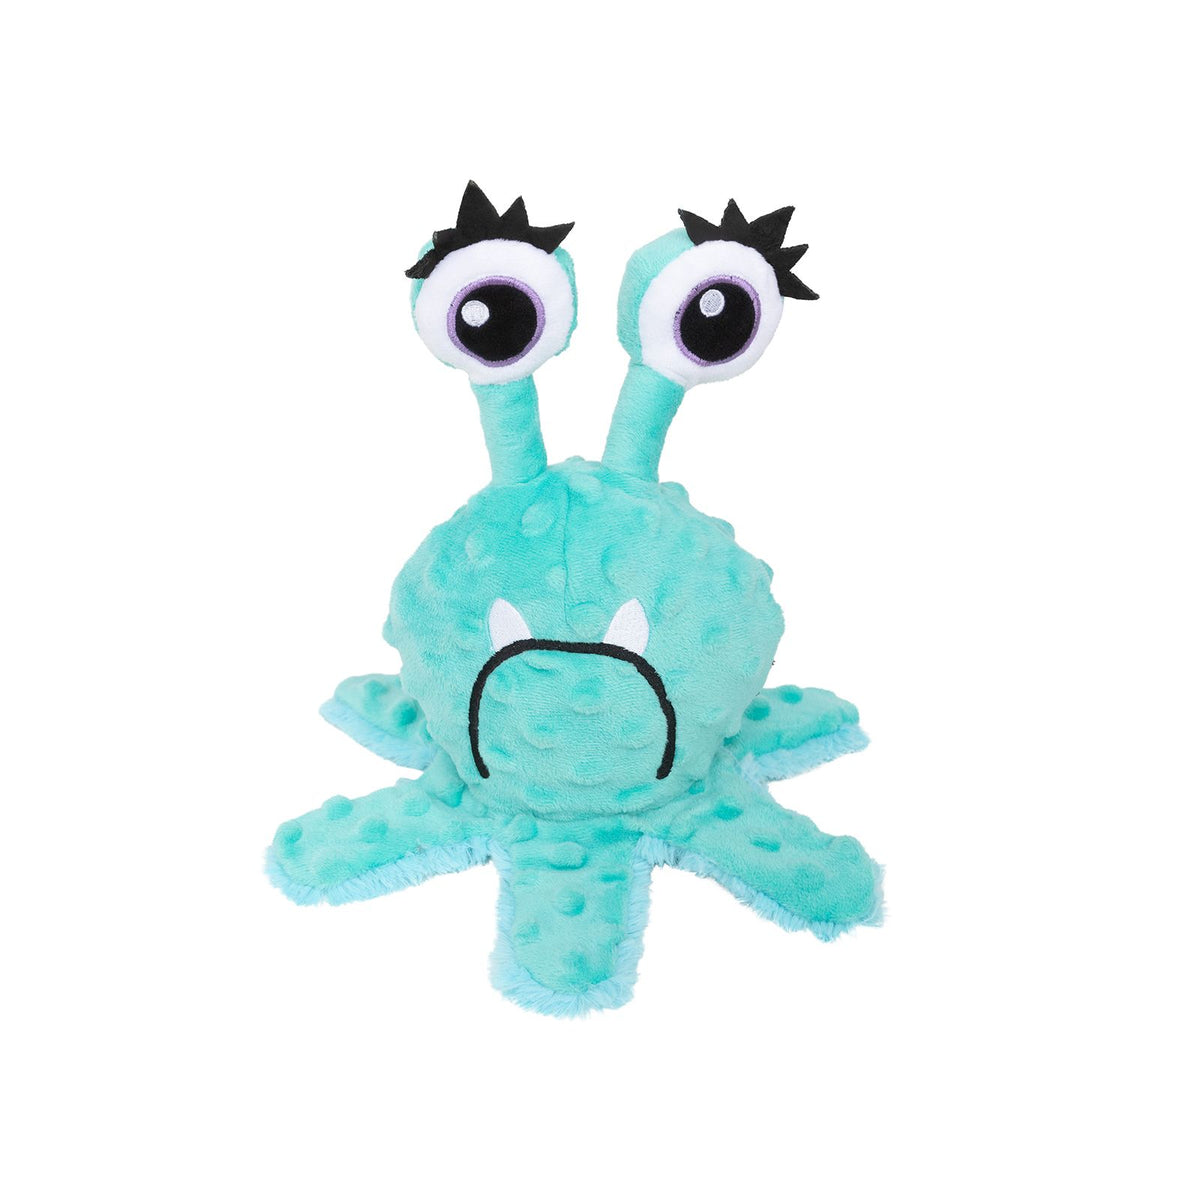 Plush Eyeball Monster Toy